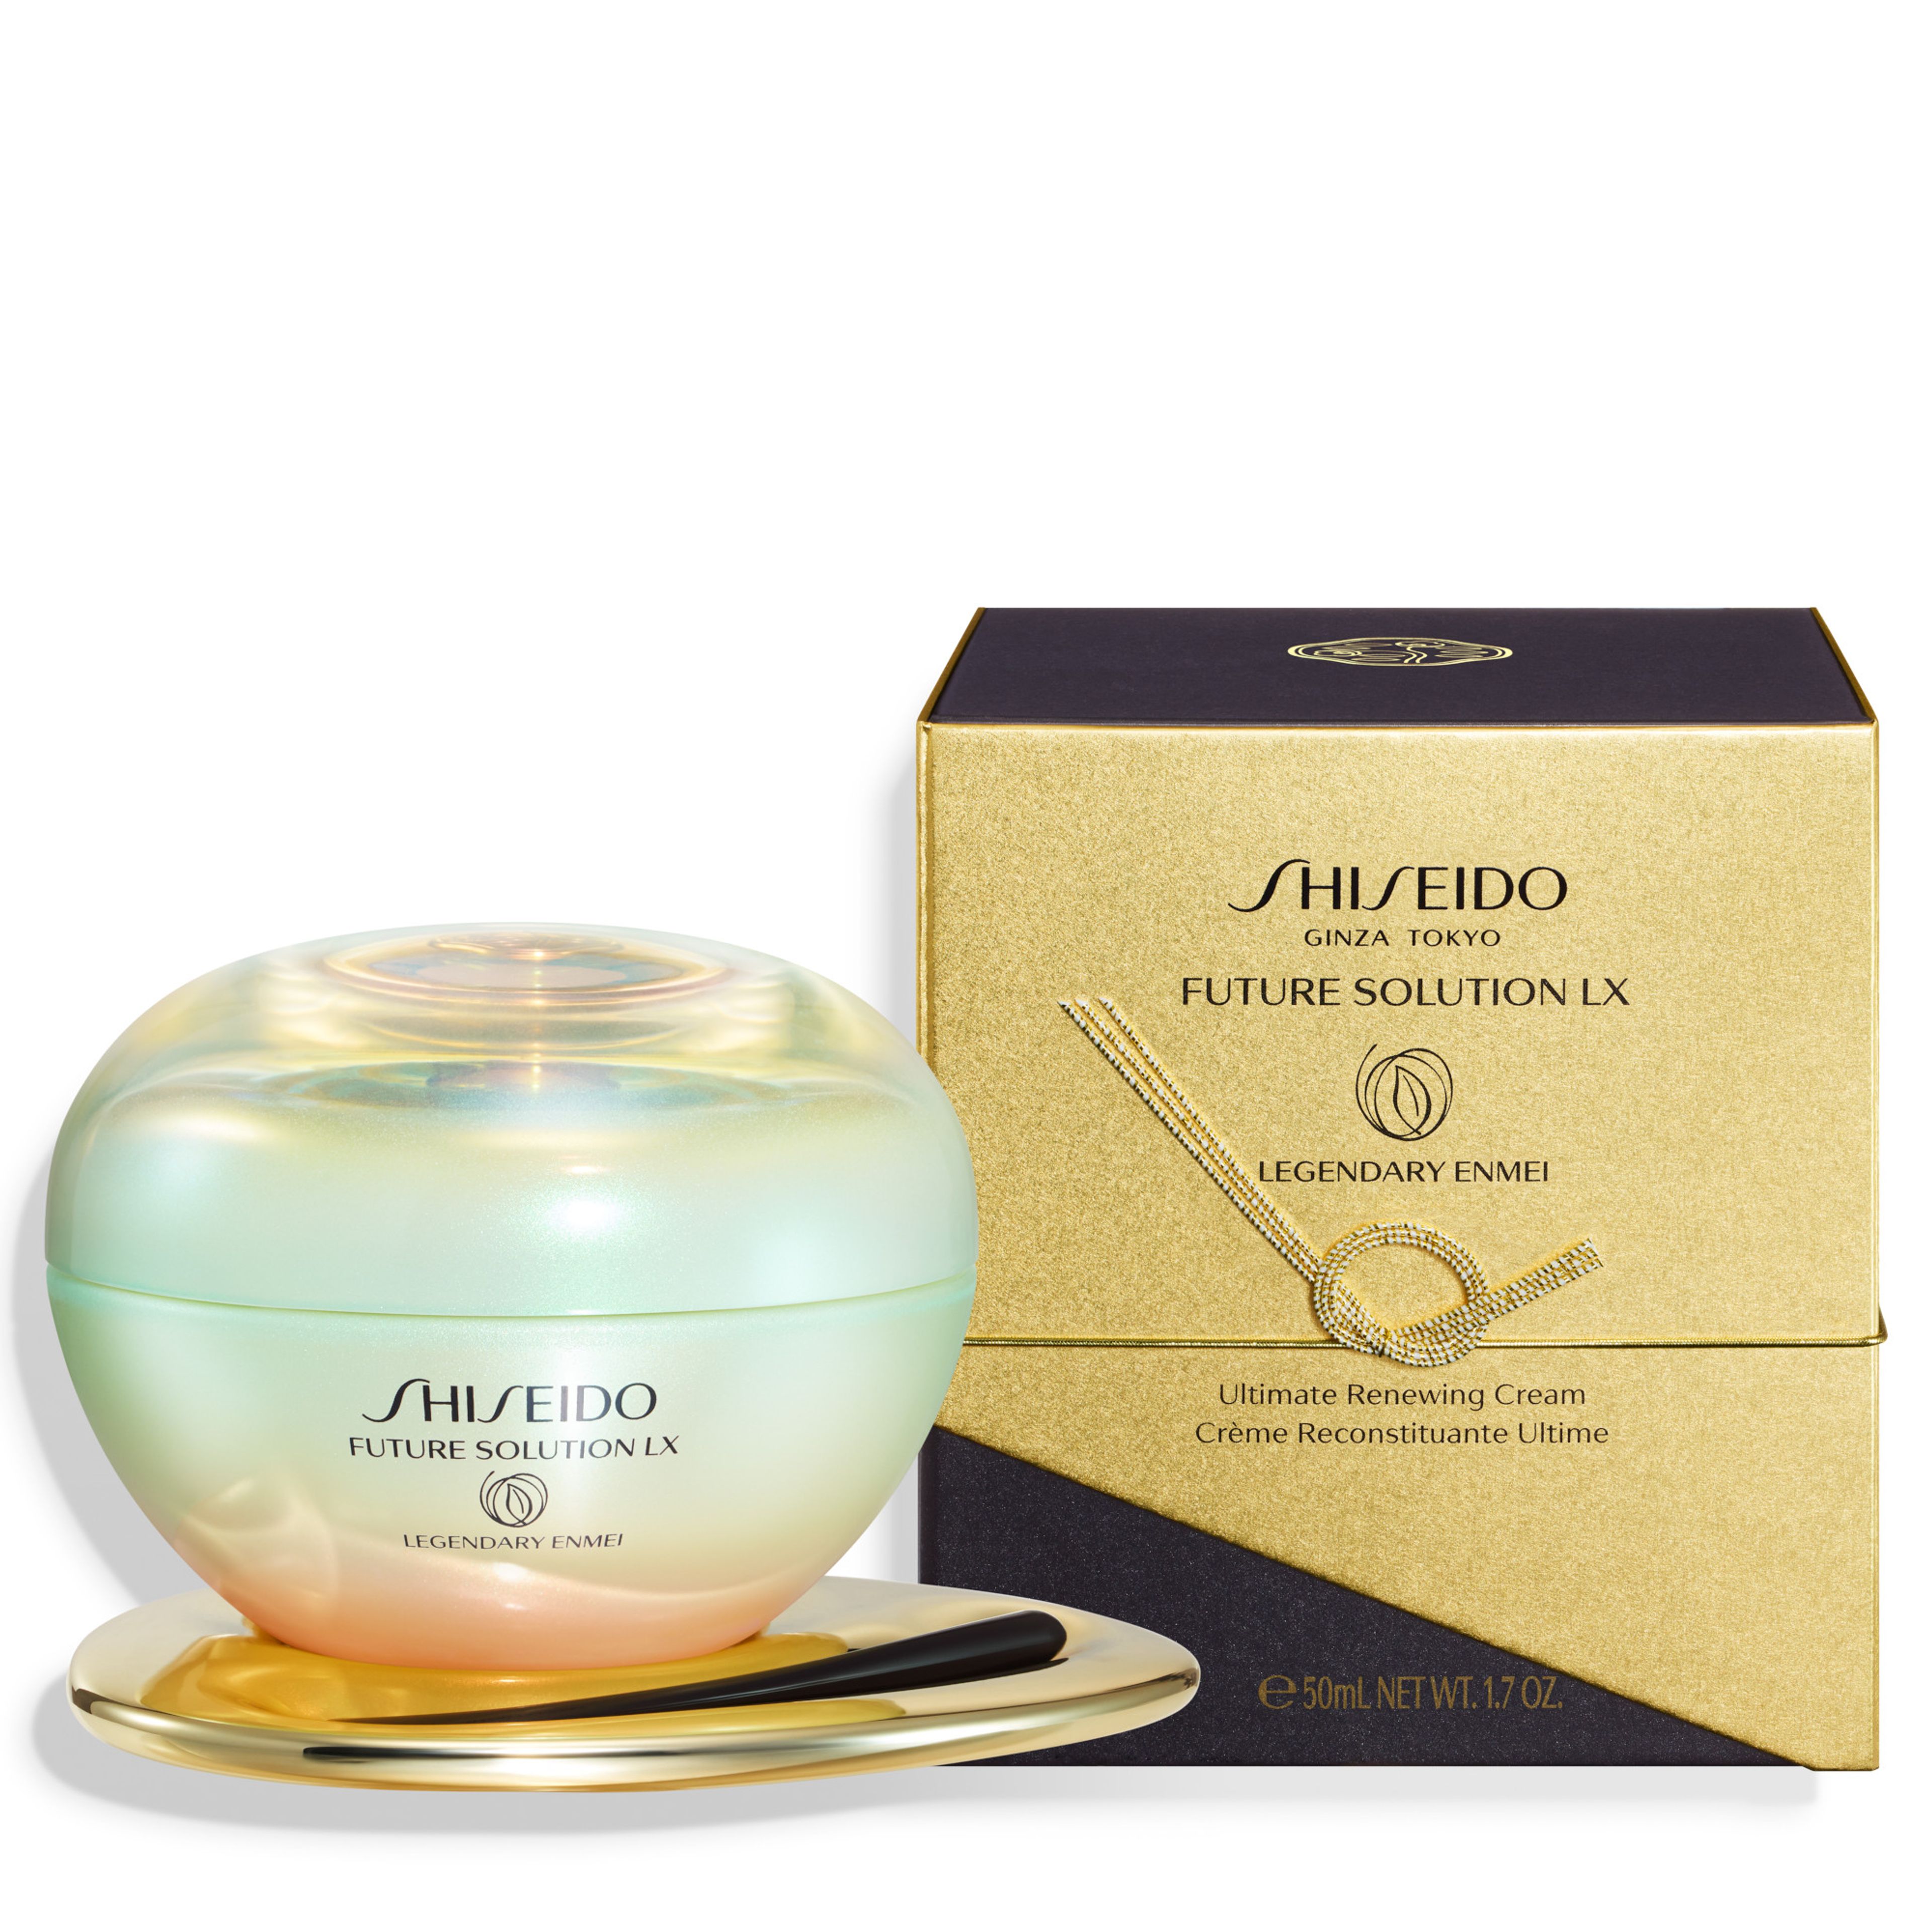 Legendary Enmei Ultimate Renewing Cream Shiseido 7